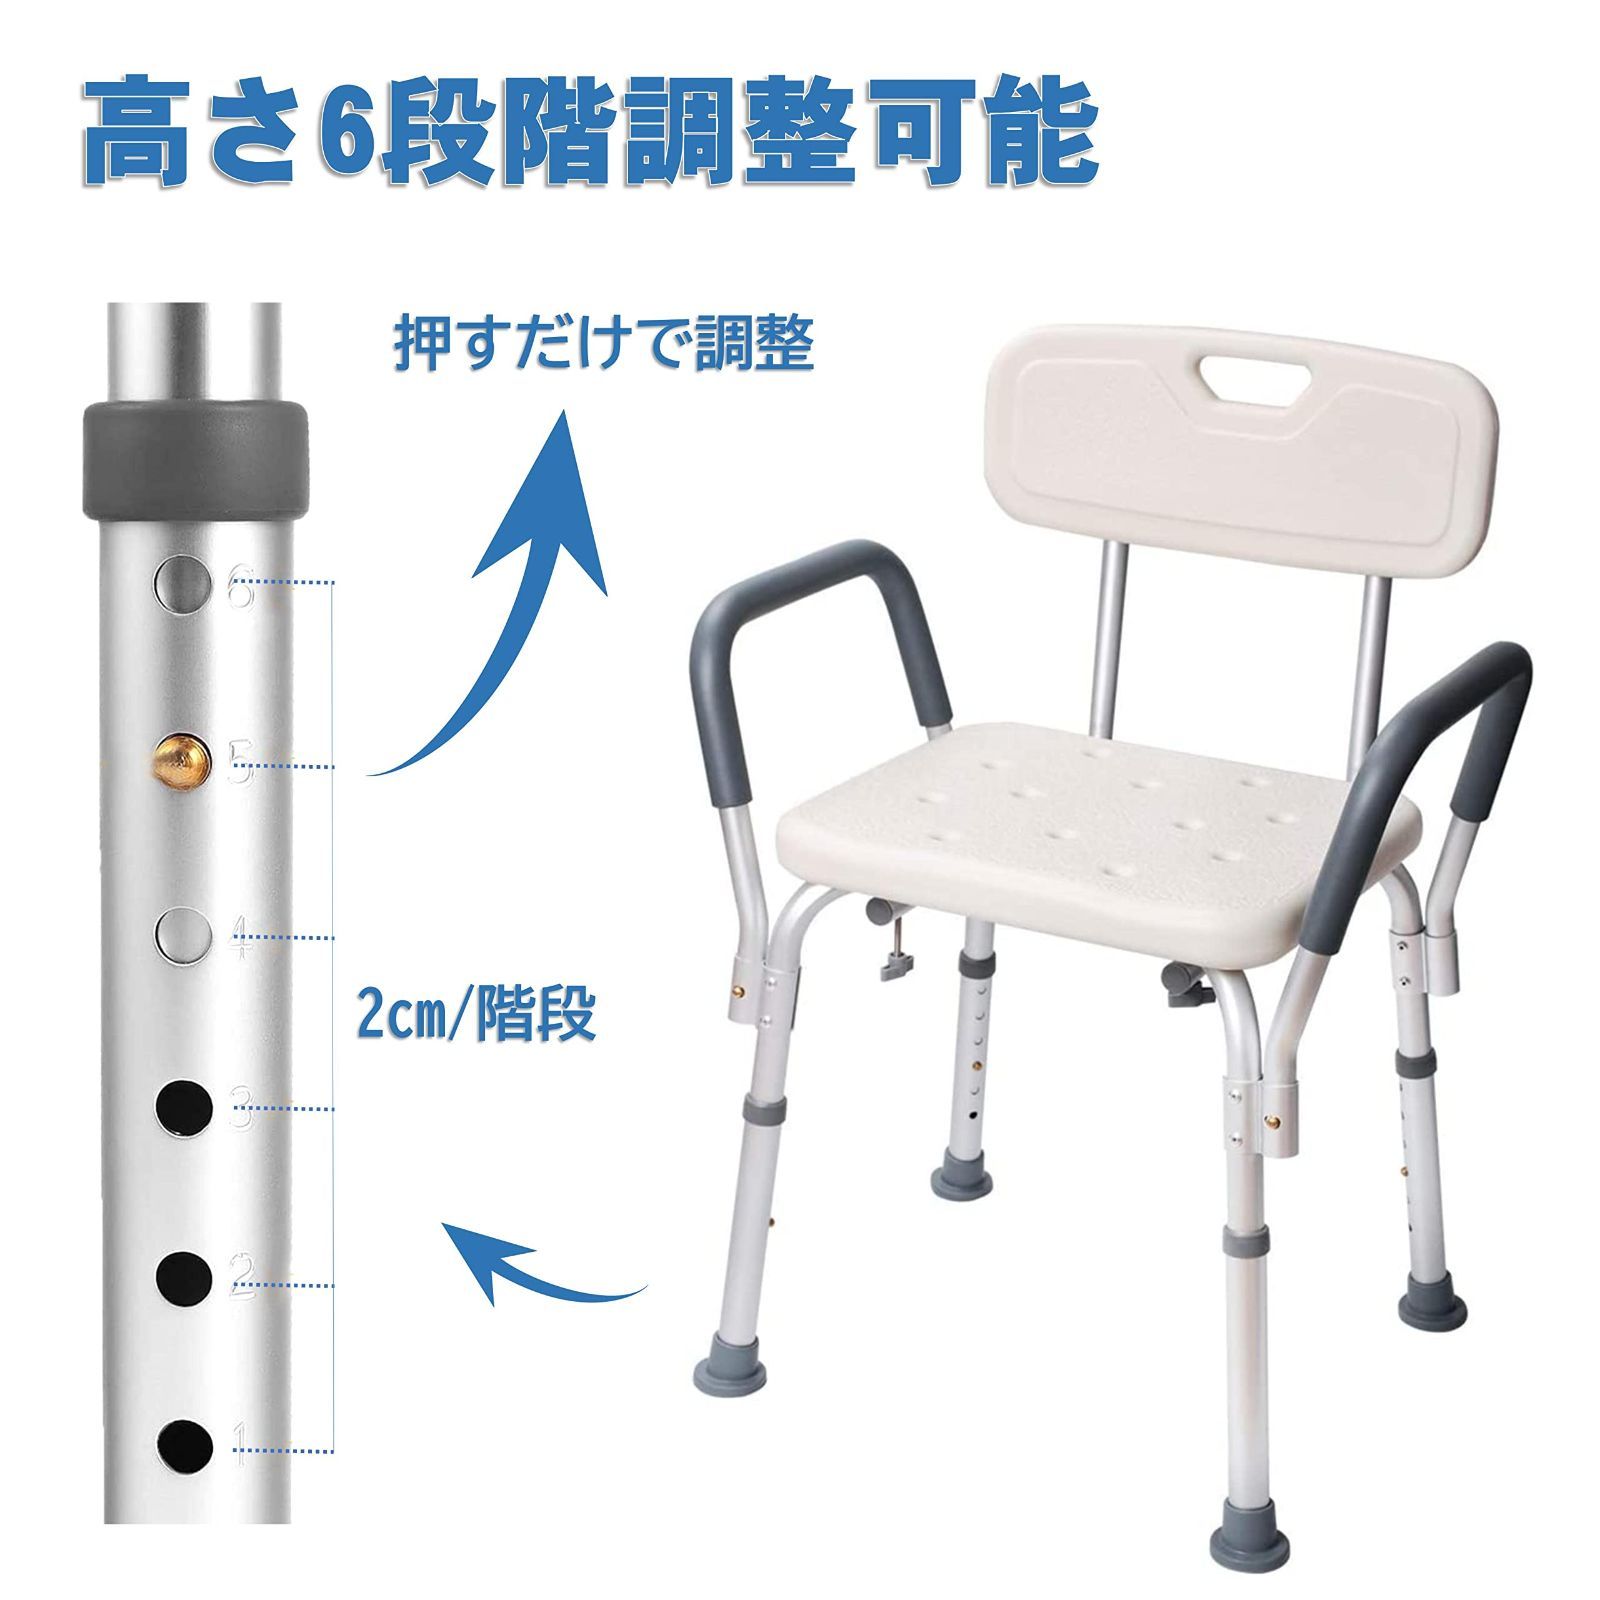 国産品 シャワーチェア 介護椅子 風呂 6段階高さ調節可能 軽量 介護用椅子